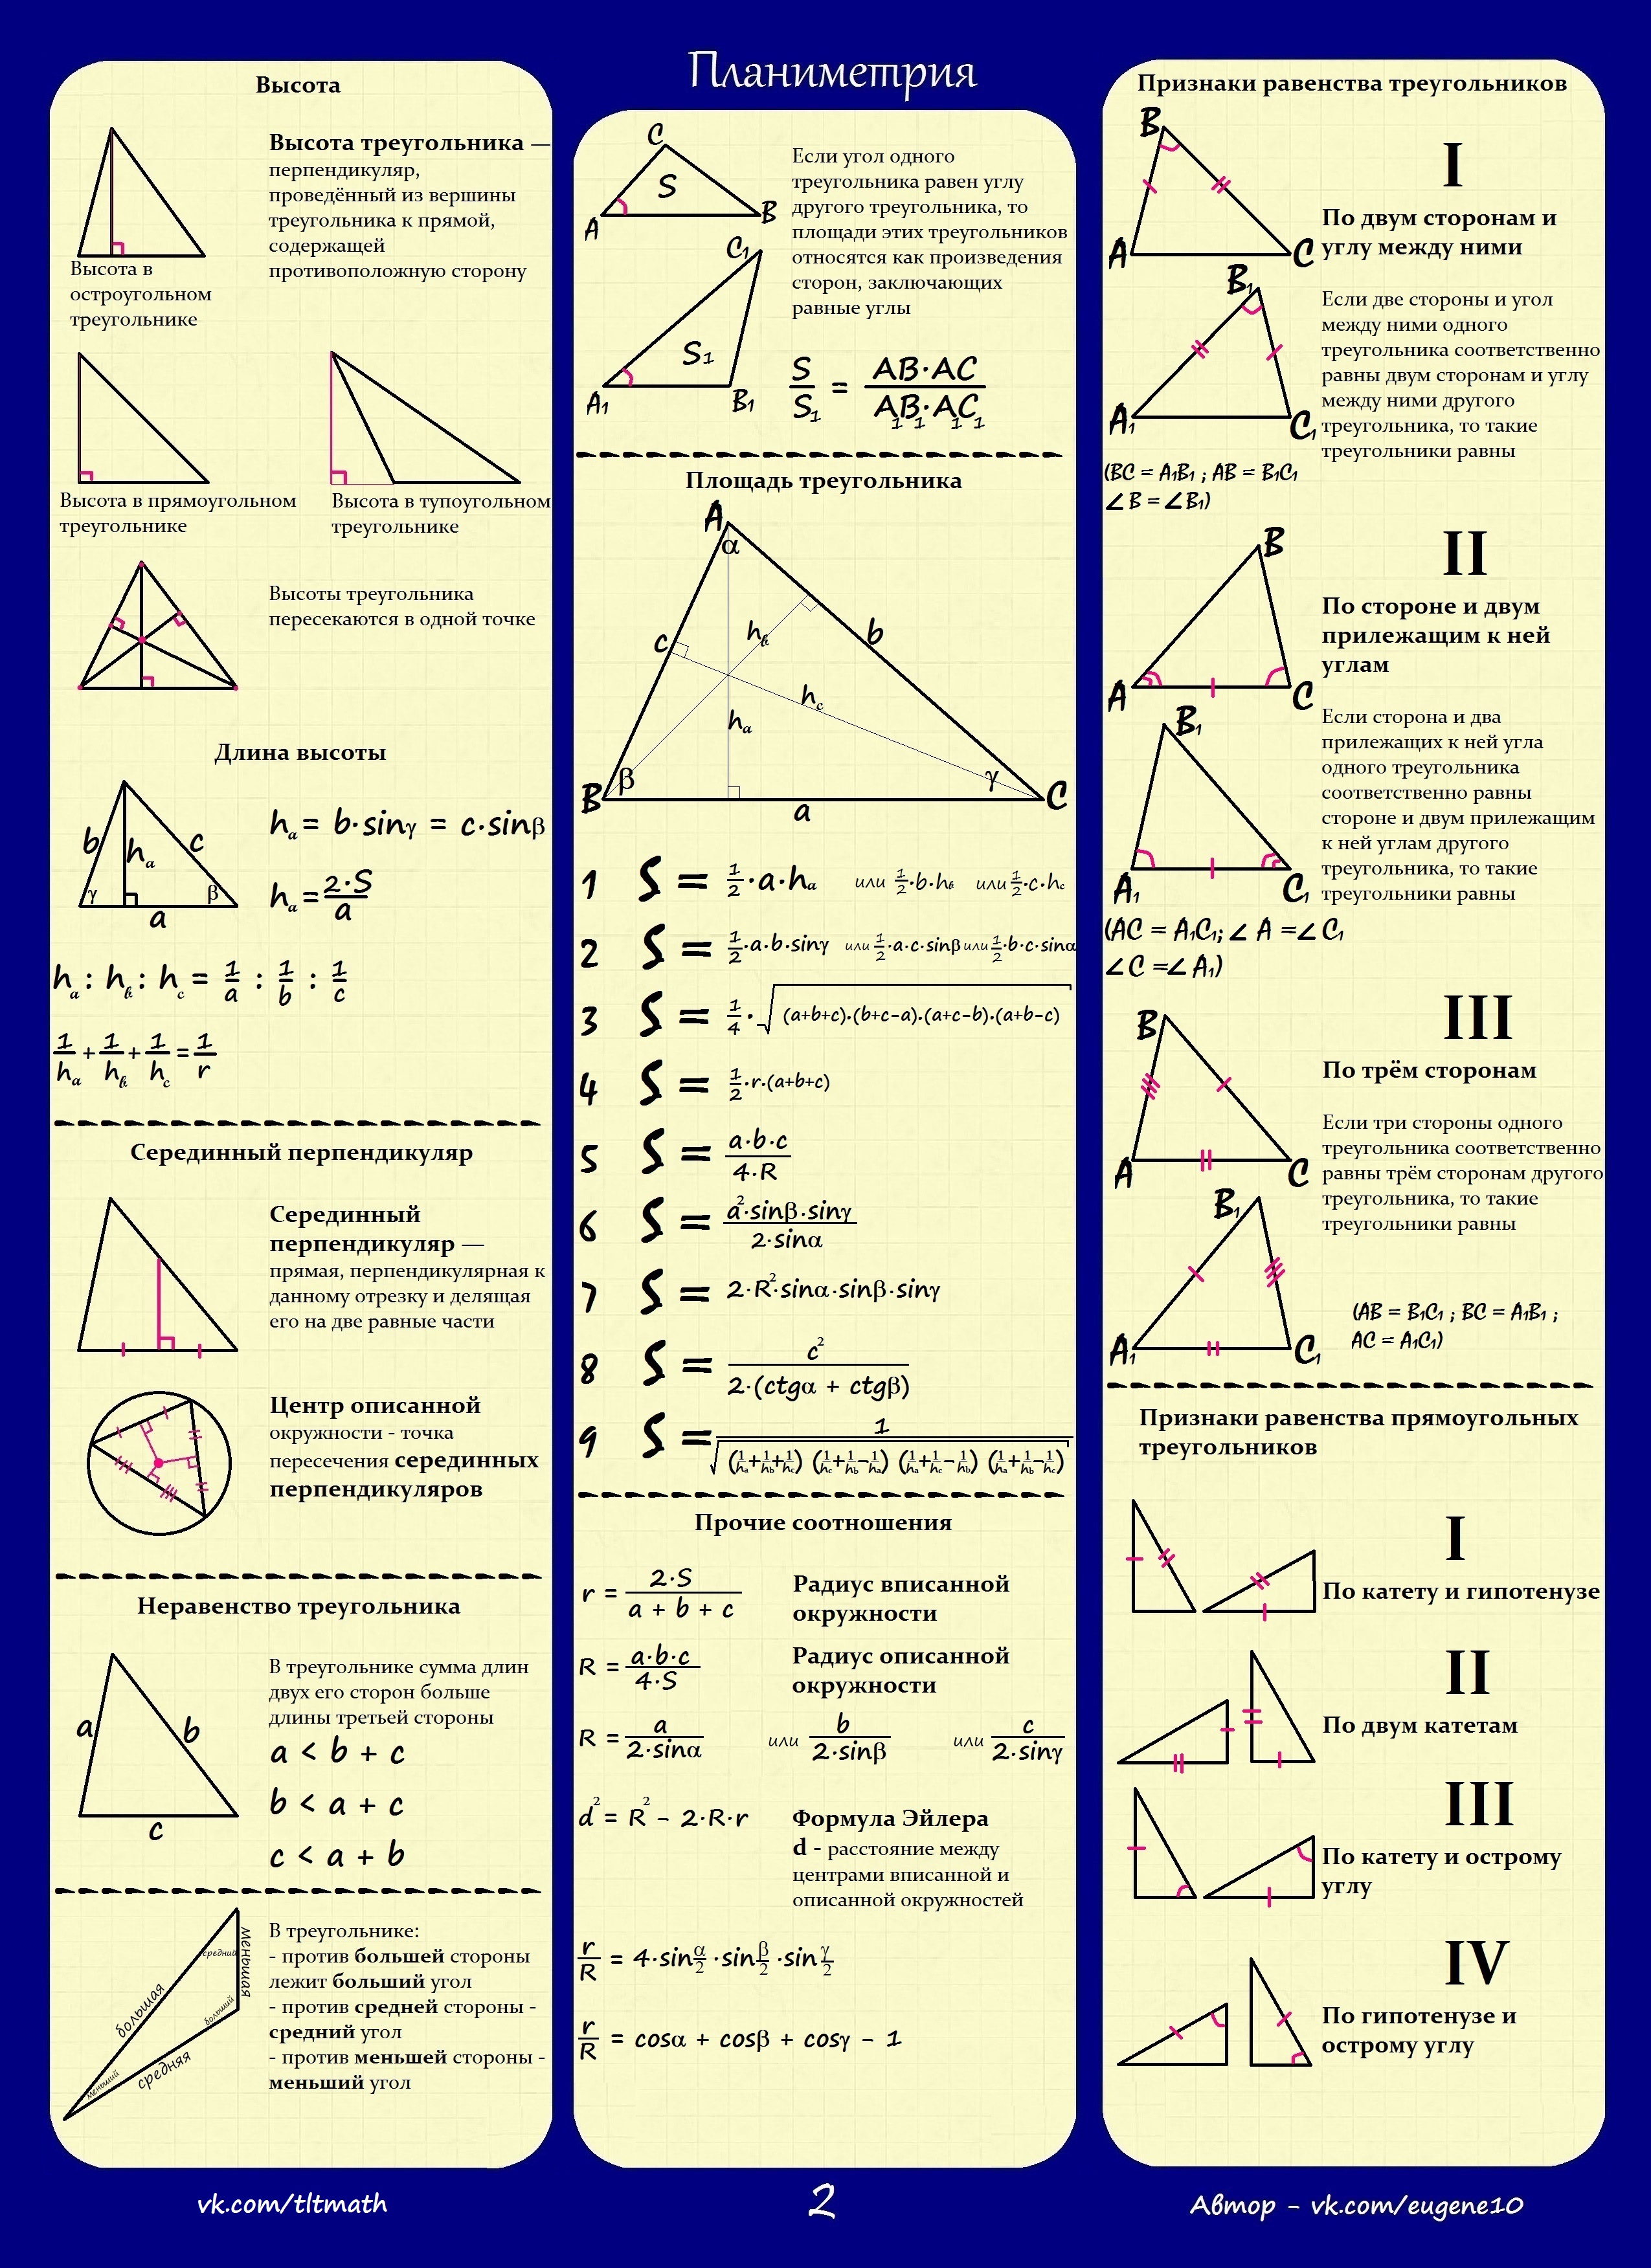 Теория 8 задания математика профиль. Формулы ЕГЭ планиметрия треугольники. Шпаргалка по планиметрии на ЕГЭ. Планиметрия формулы шпаргалка. Формулы планиметрии для ЕГЭ шпаргалка.